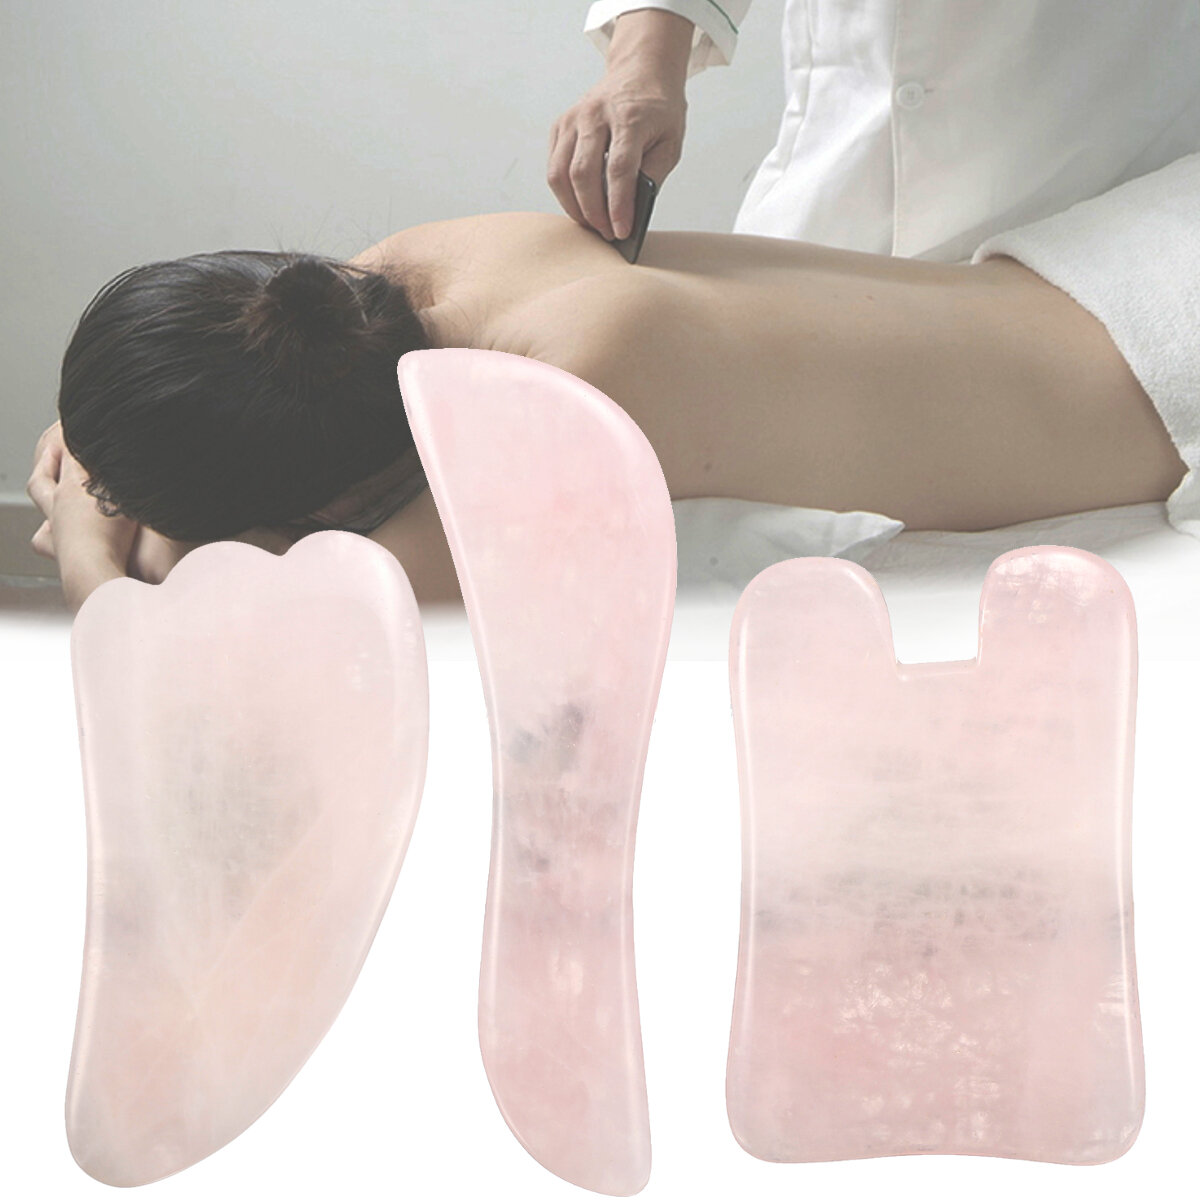 

3Pcs Natural Jade Stone Gua Sha Manual Massager Board Health Beauty Facial Massage Board, Pink